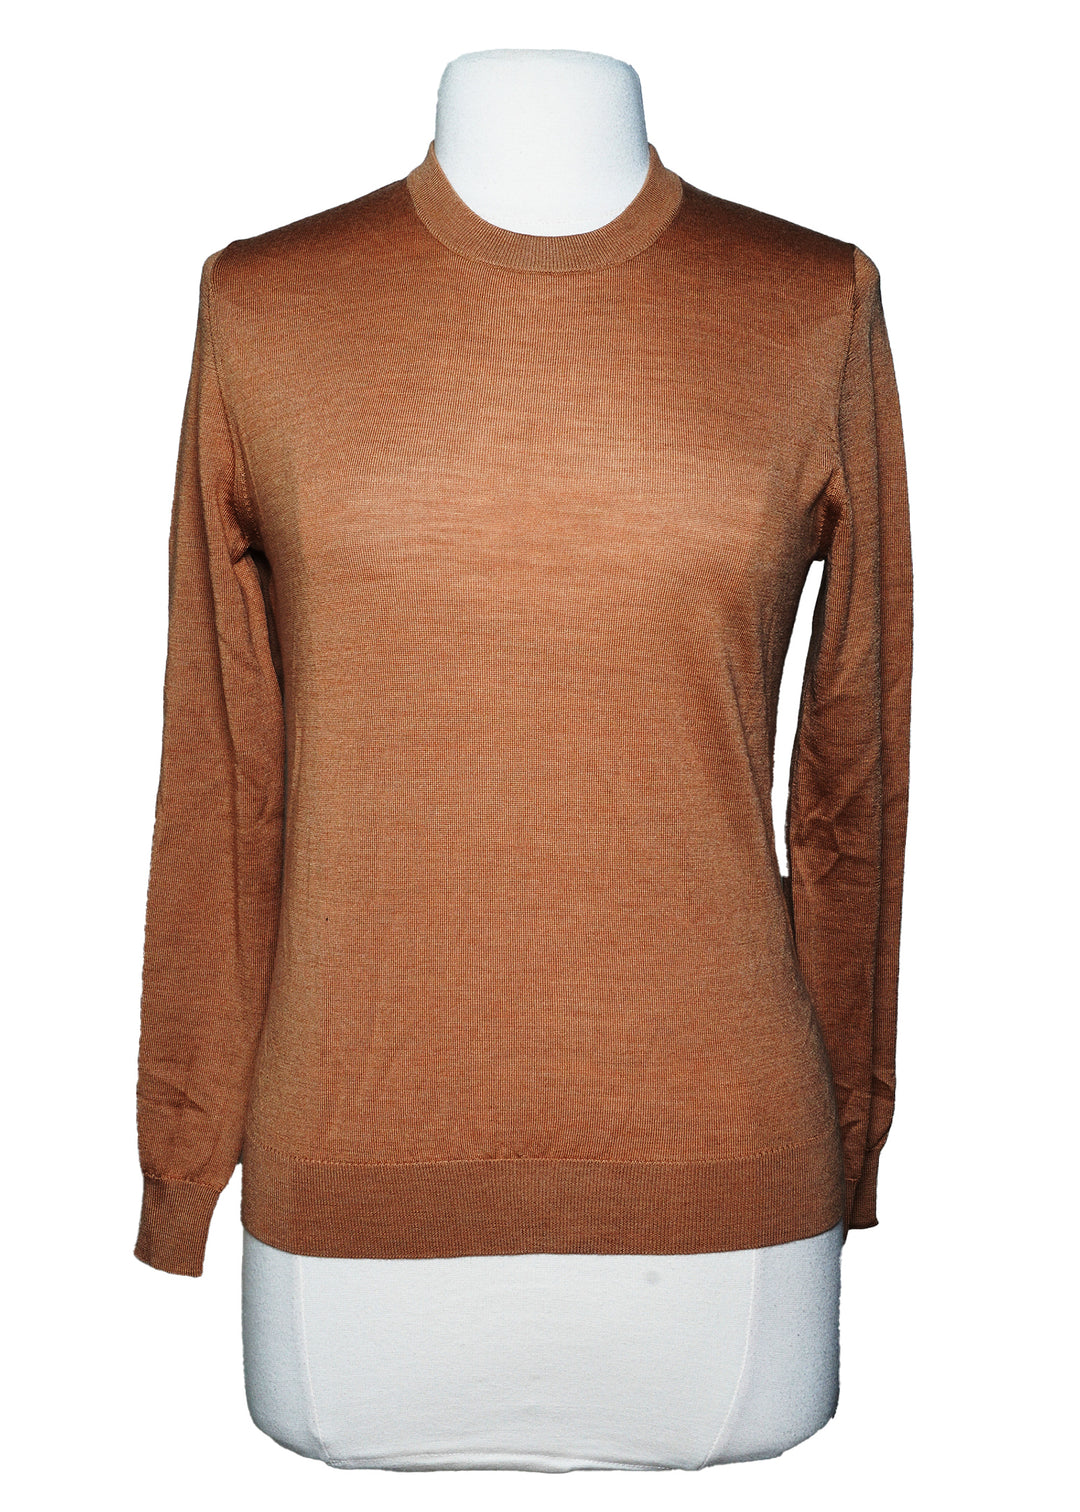 Peter Millar Sweater -  Gold  Brown  - Size Medium - Skorzie